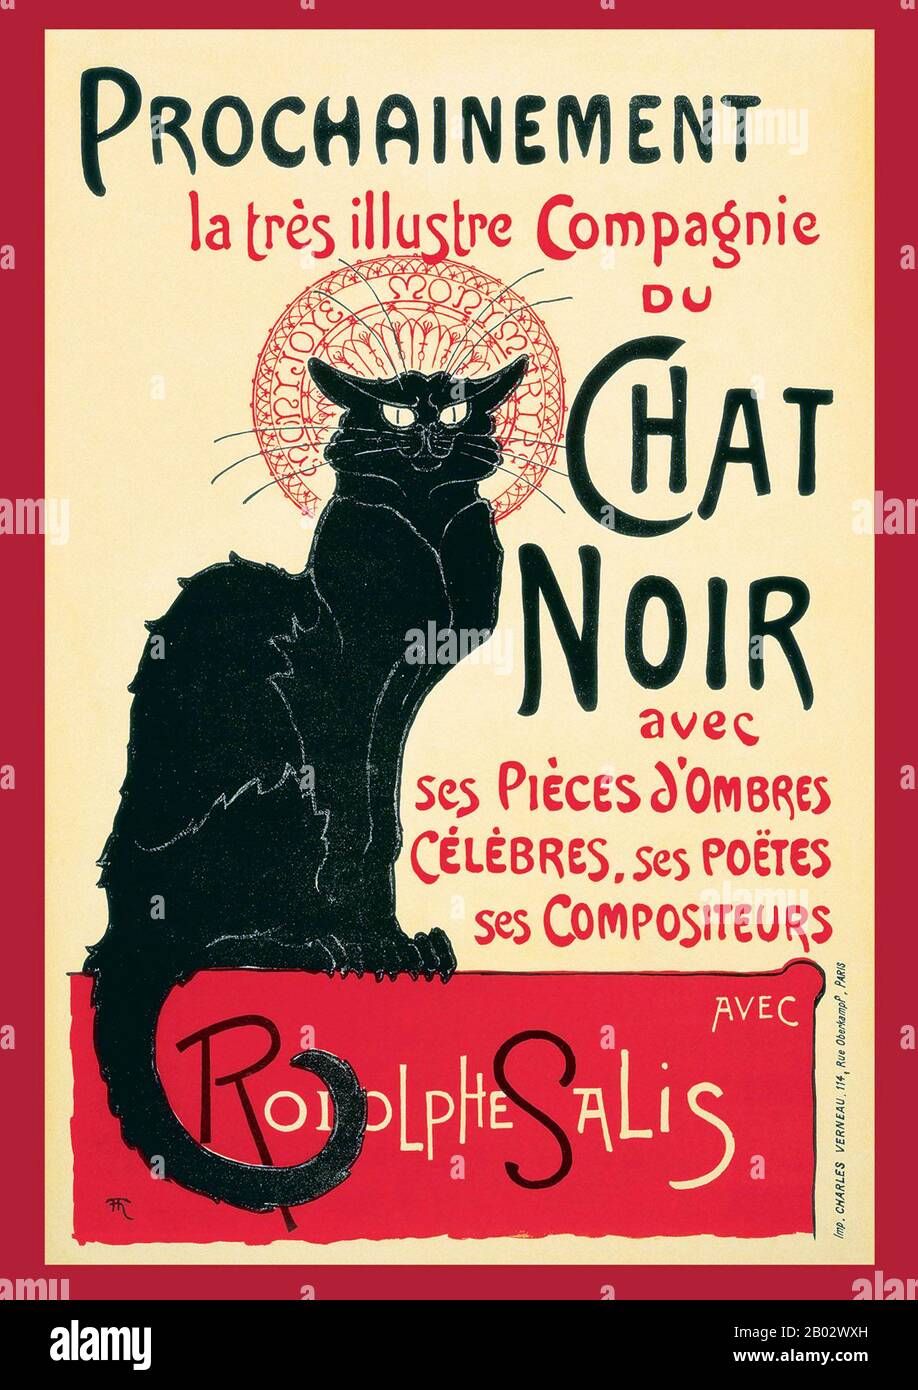 Le Chat Noir (français pour « The Black Cat ») était un établissement de divertissement du XIXe siècle, situé dans le quartier bohème de Montmartre à Paris. Il a ouvert le 18 novembre 1881 au 84 Boulevard Rochechouart par l'impresario Rodolphe Salis, et fermé en 1897 peu après la mort de Salis (beaucoup à la déception de Picasso et d'autres qui l'ont cherché quand ils sont venus à Paris pour l'exposition en 1900). Le Chat Noir est considéré comme le premier cabaret moderne : une discothèque où les clients s'asseyaient aux tables et bu des boissons alcoolisées tout en étant amusés par un spectacle varié sur scène. Les actes étaient Banque D'Images